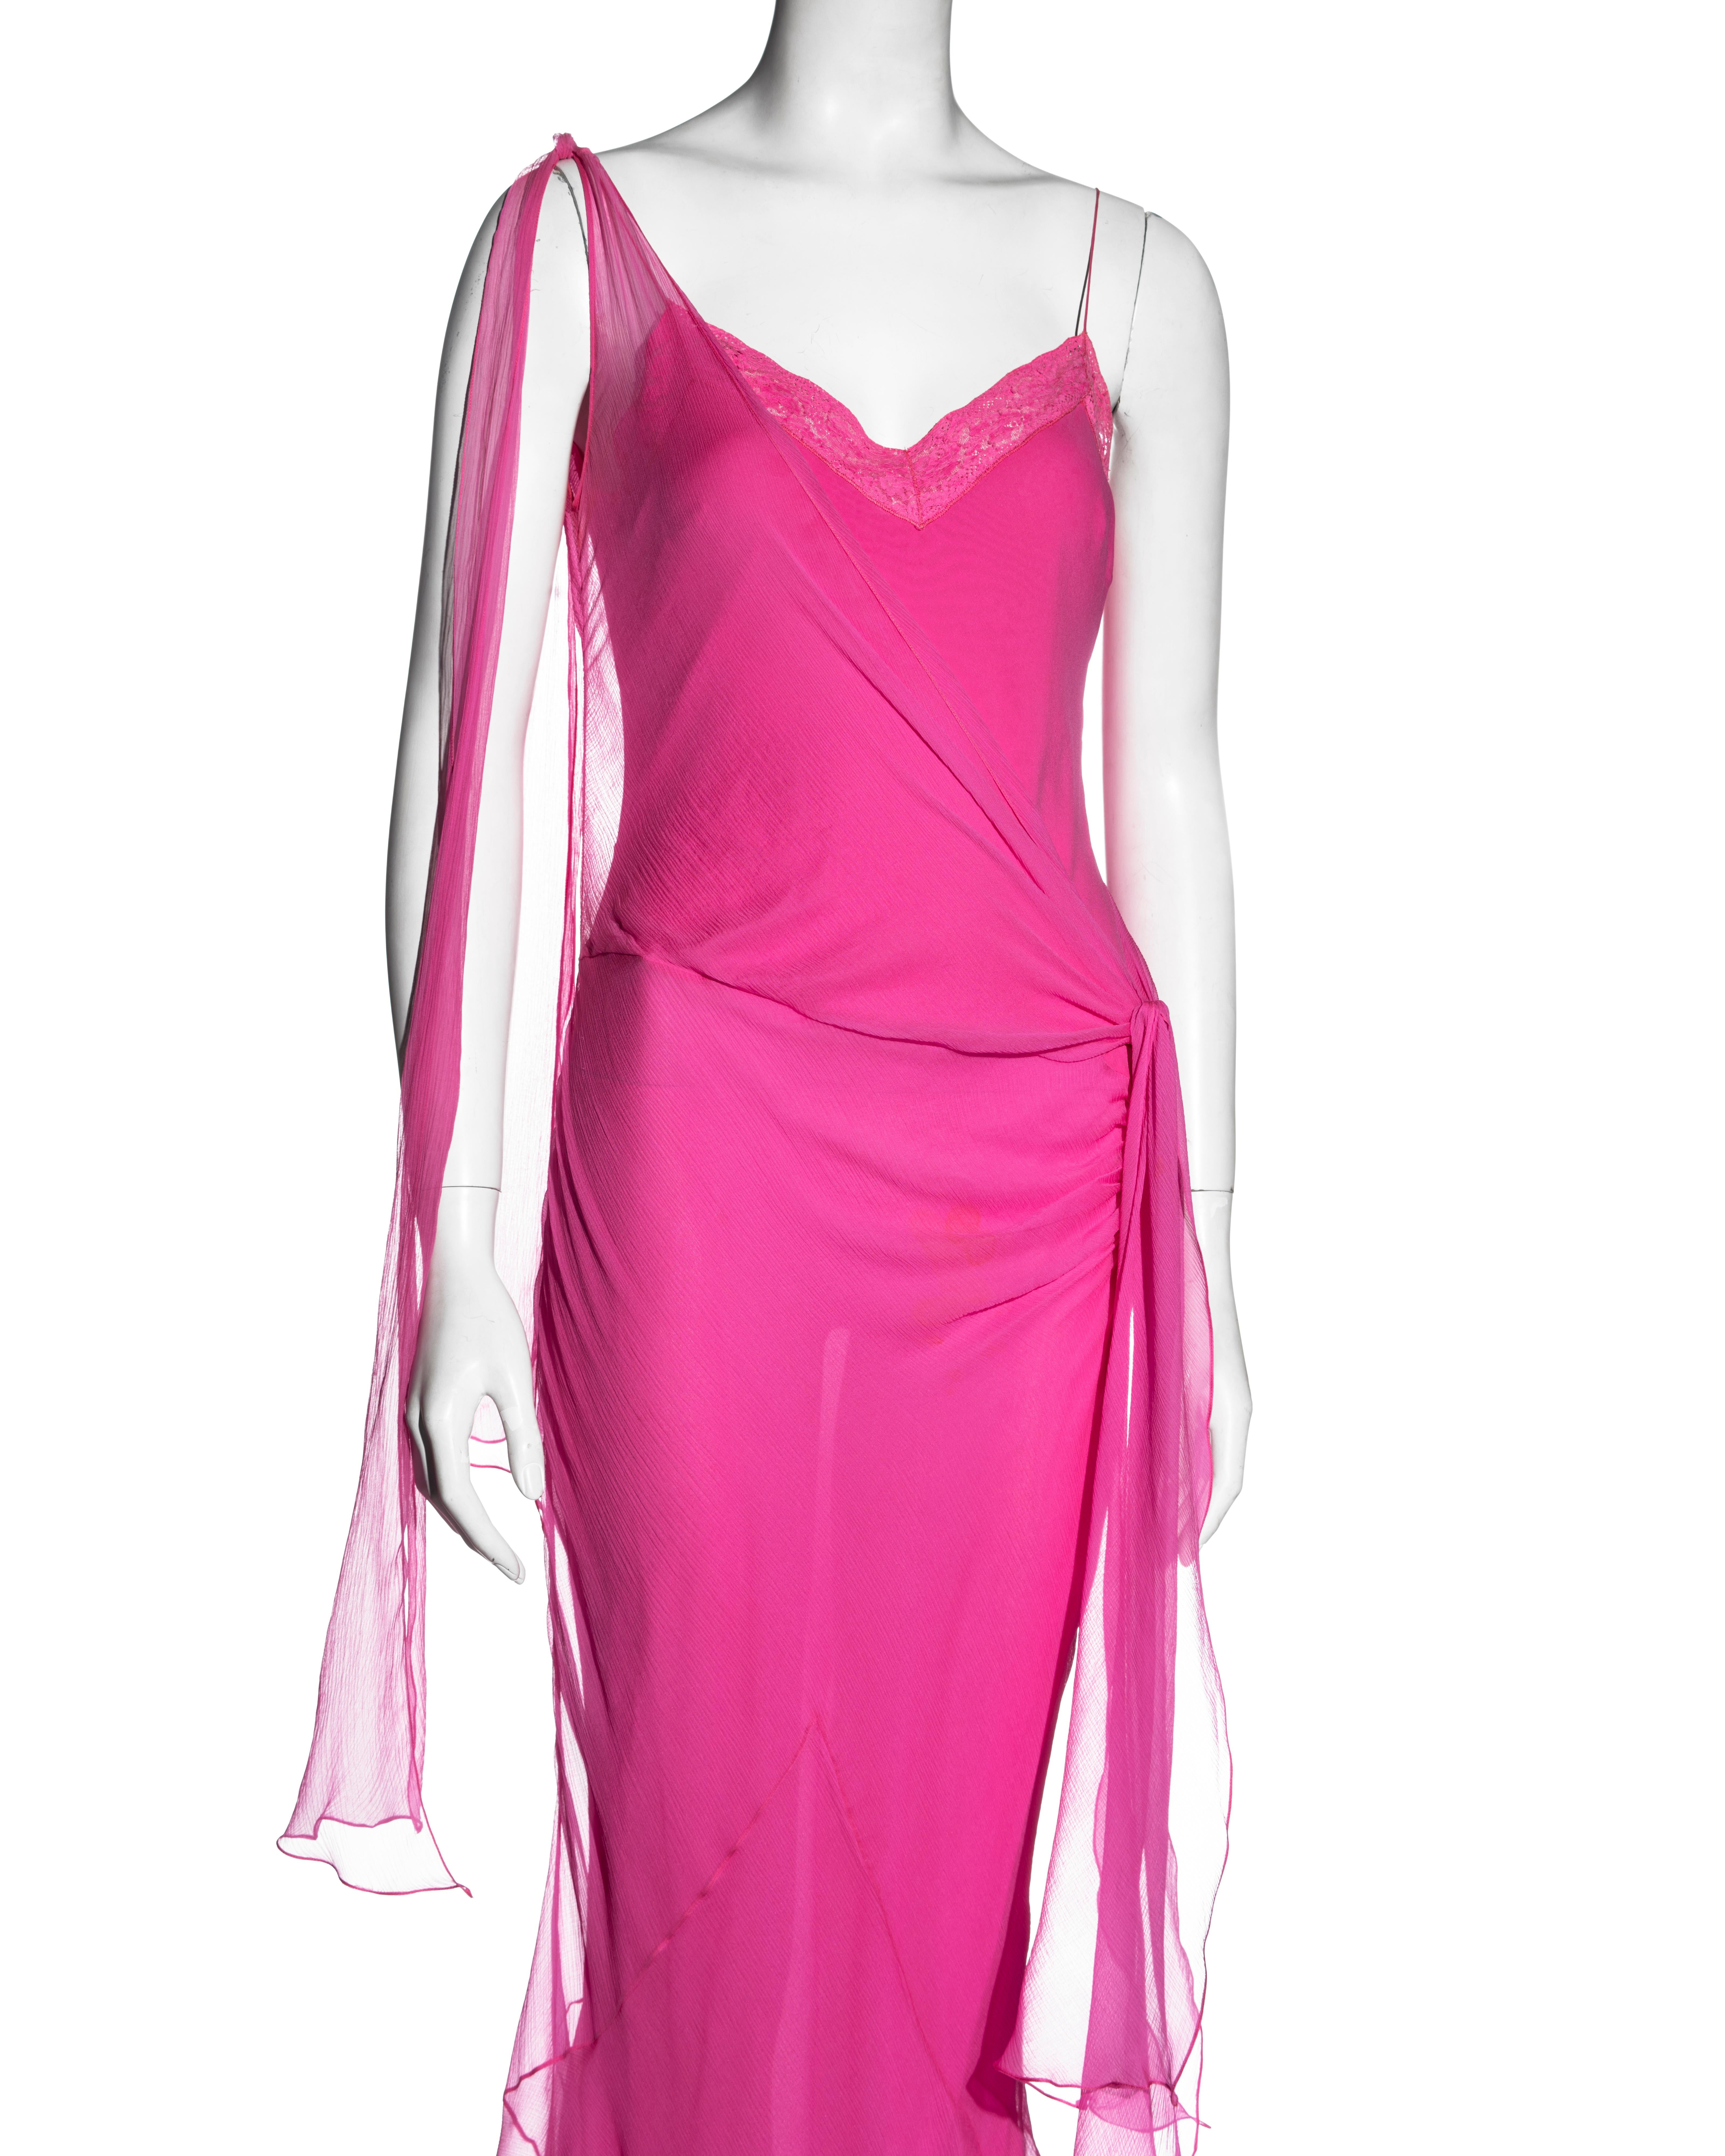 hot pink chiffon dress